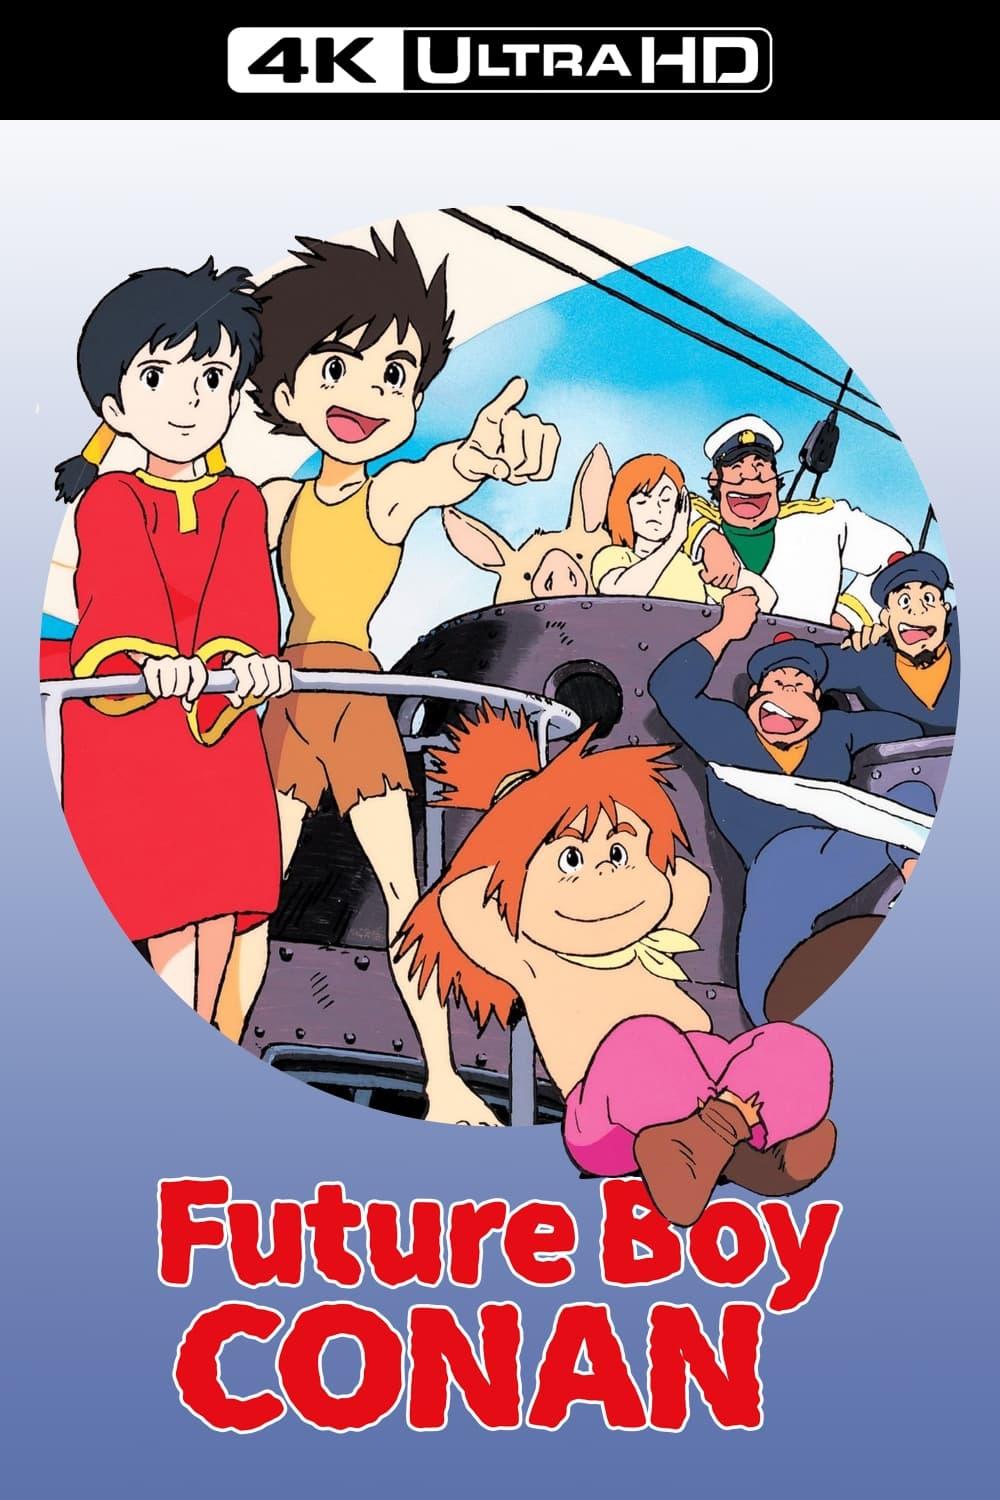 Future Boy Conan poster